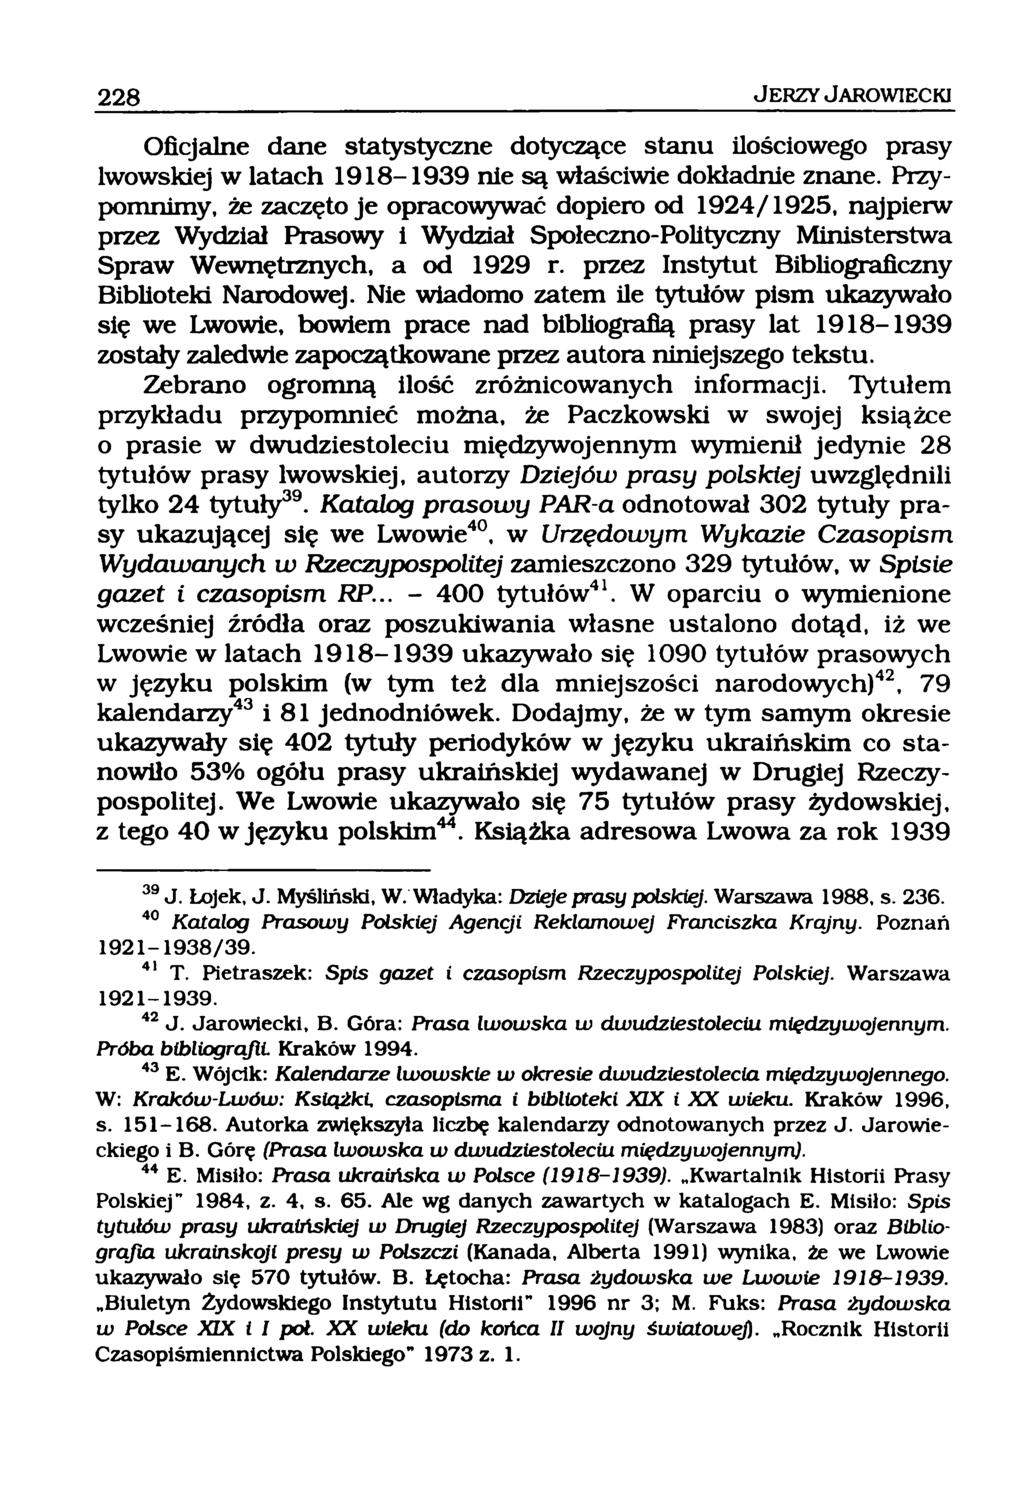 Oficjalne dane statystyczne dotyczące stanu ilościowego prasy lwowskiej w latach 1918-1939 nie są właściwie dokładnie znane.